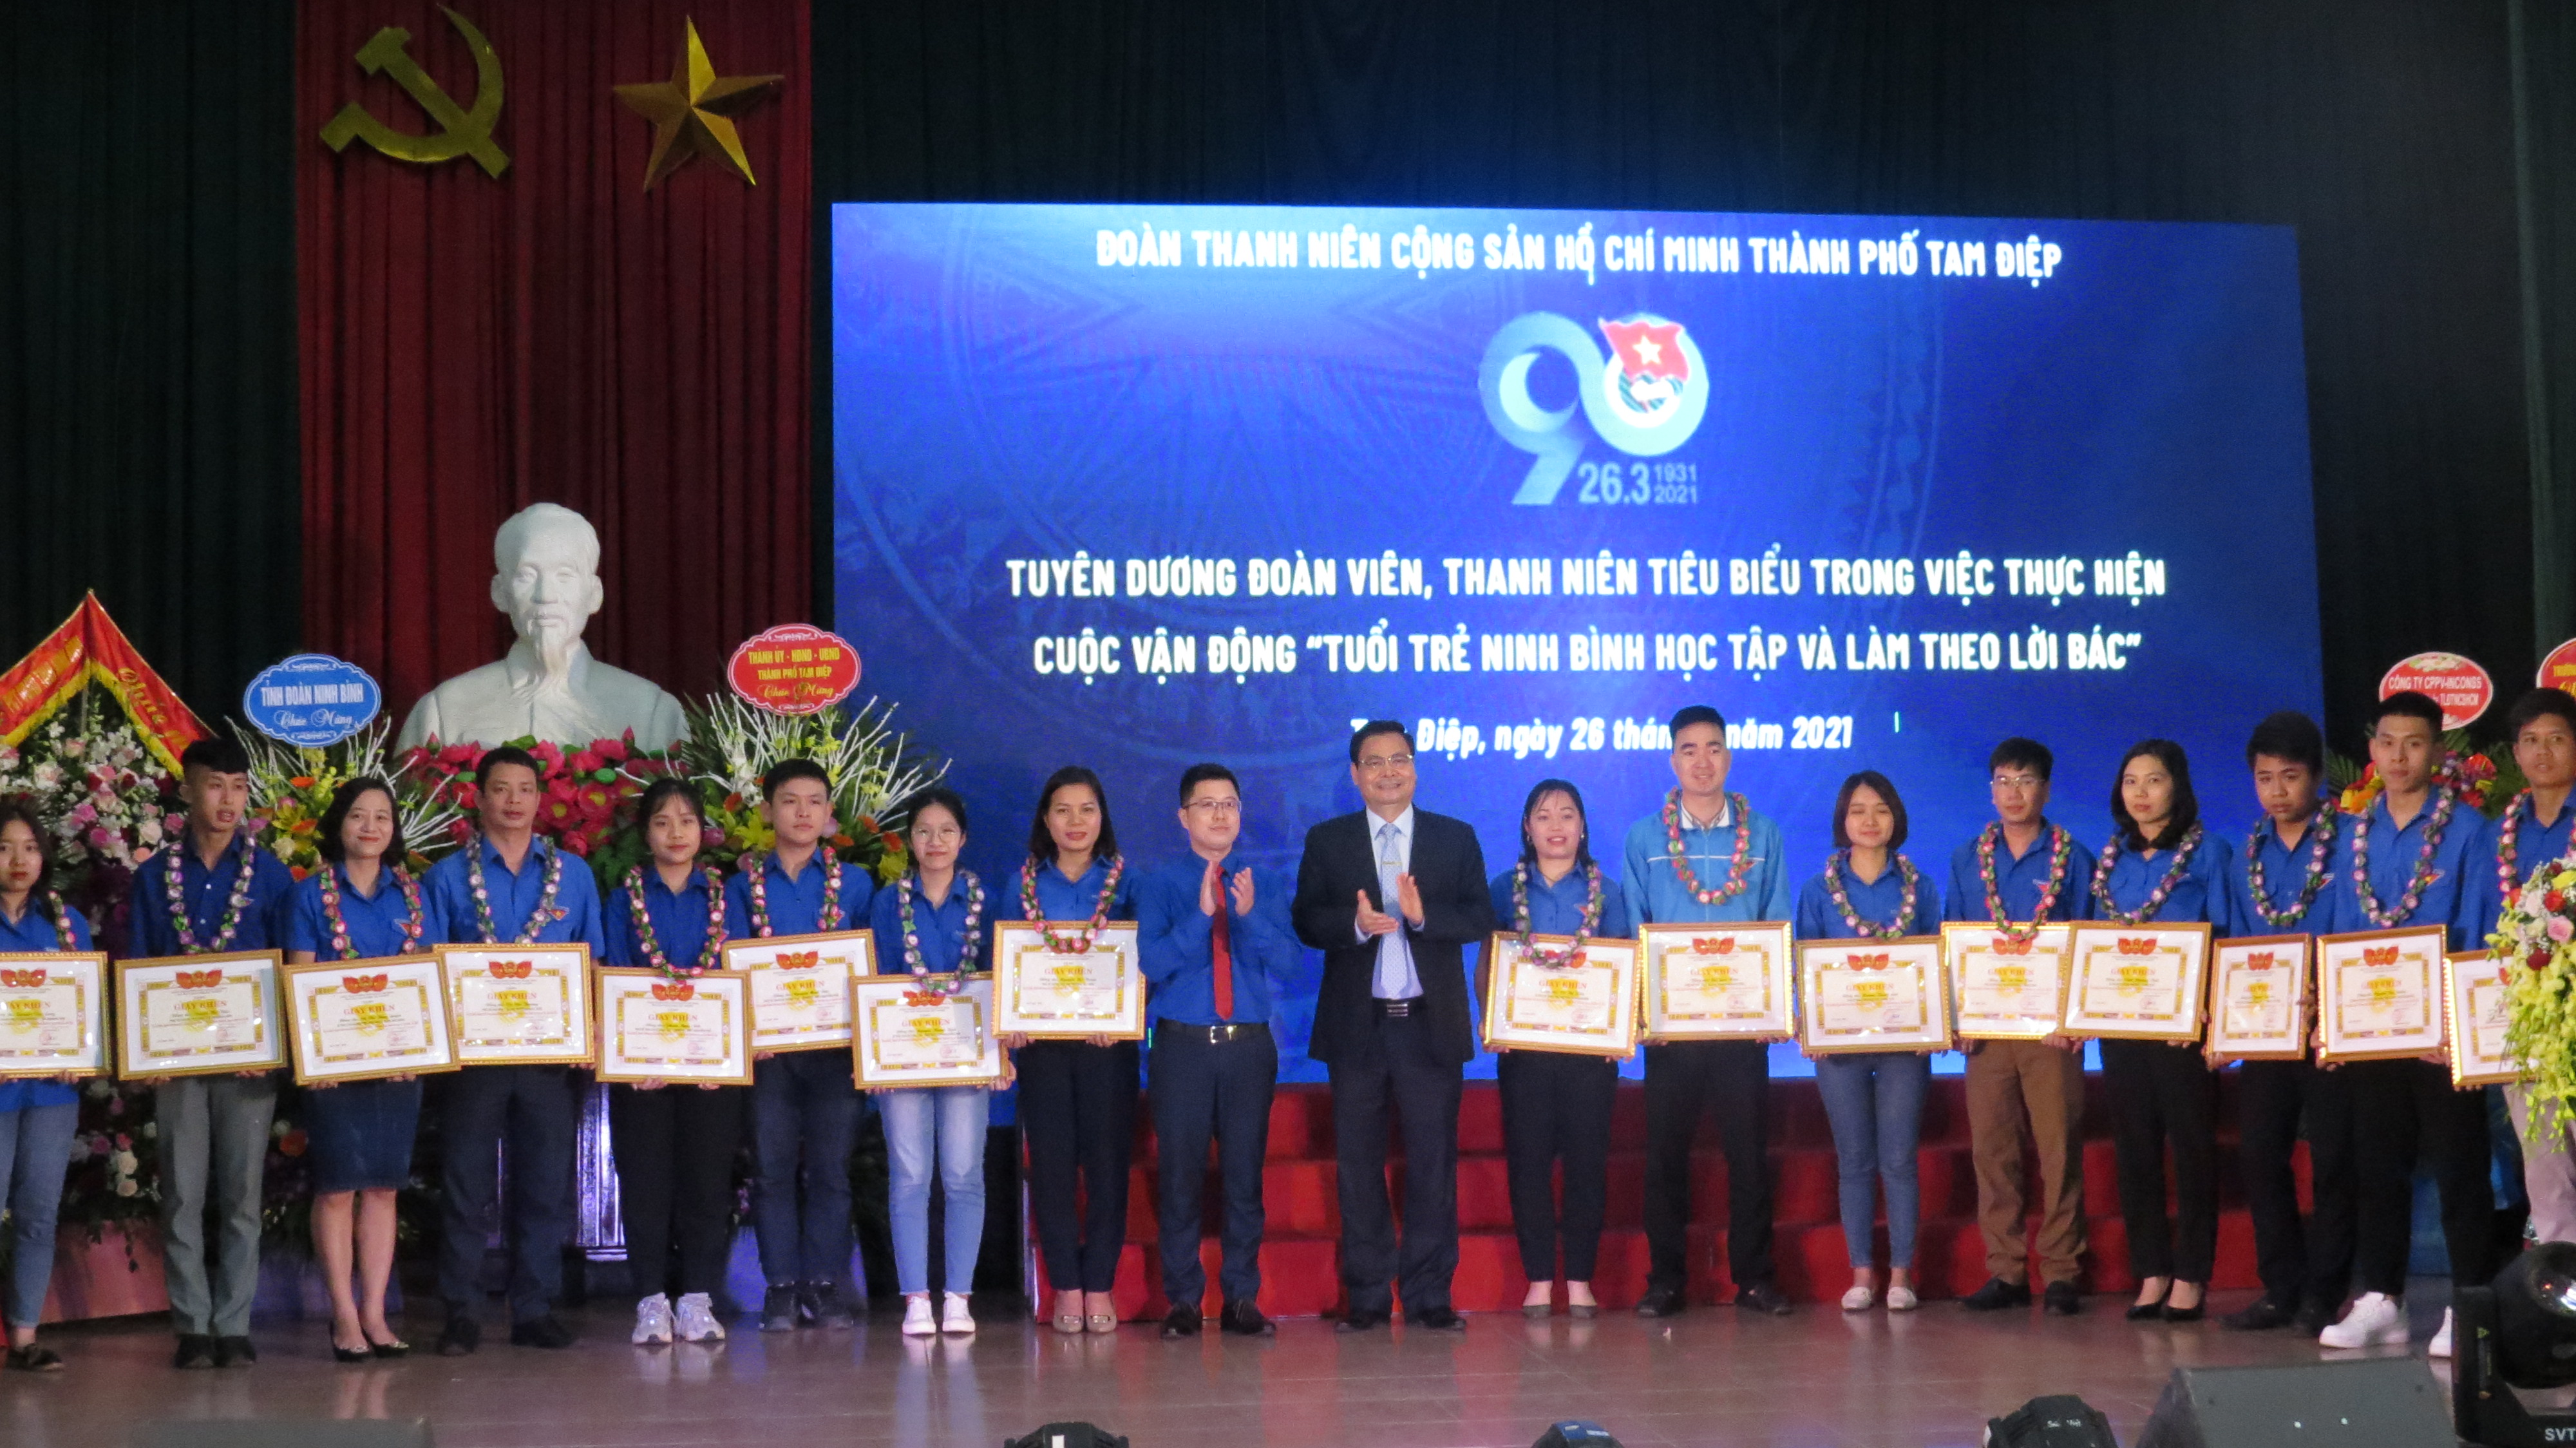 Chiều  ngày 26/3/2021, Đoàn TNCS Hồ Chí Minh thành phố Tam Điệp đã  long trọng tổ chức Lễ kỷ niệm 90 năm ngày thành lập Đoàn TNCS Hồ Chí Minh (26/3/1931 – 26/3/2021).